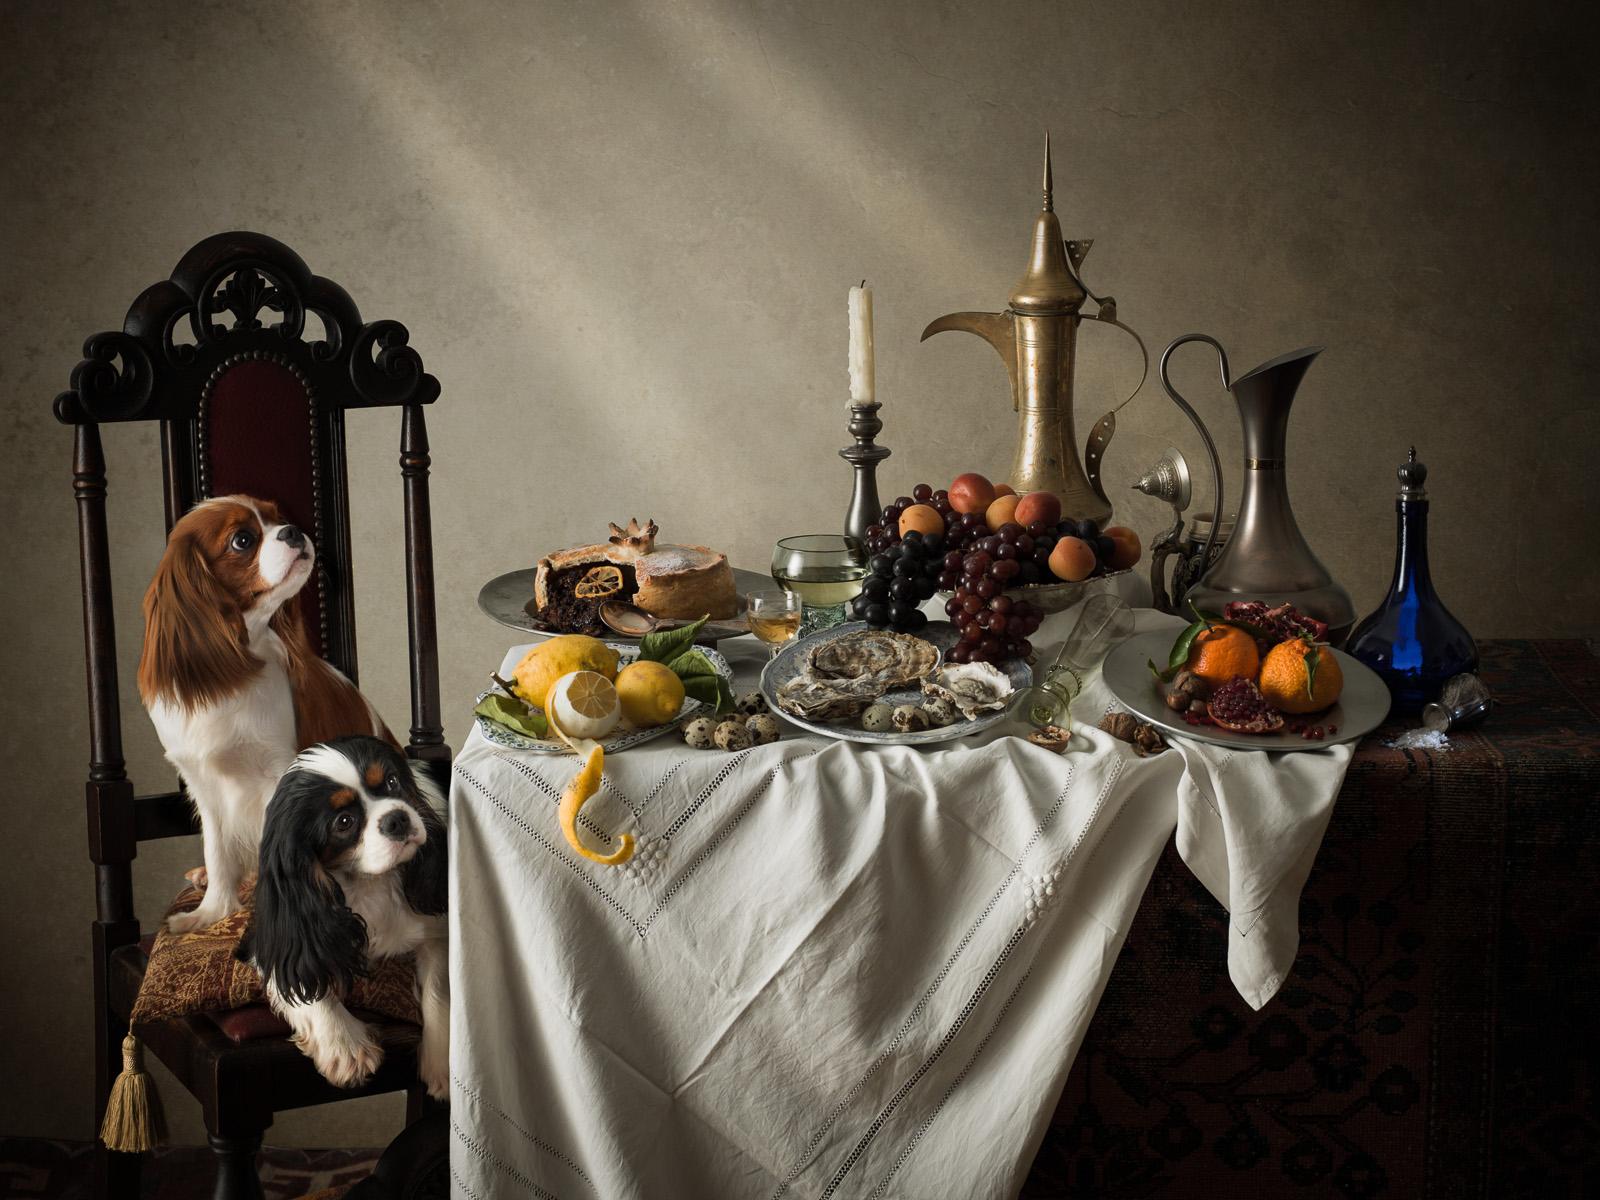 Niederländischer Hund #3 King Charles Spaniels -  Signierter Archivpigmentdruck in limitierter Auflage  -  Auflage von 3

Eine Serie von vier Bildern, die vom goldenen Zeitalter der niederländischen Stilllebenmalerei des 17. Jahrhunderts inspiriert